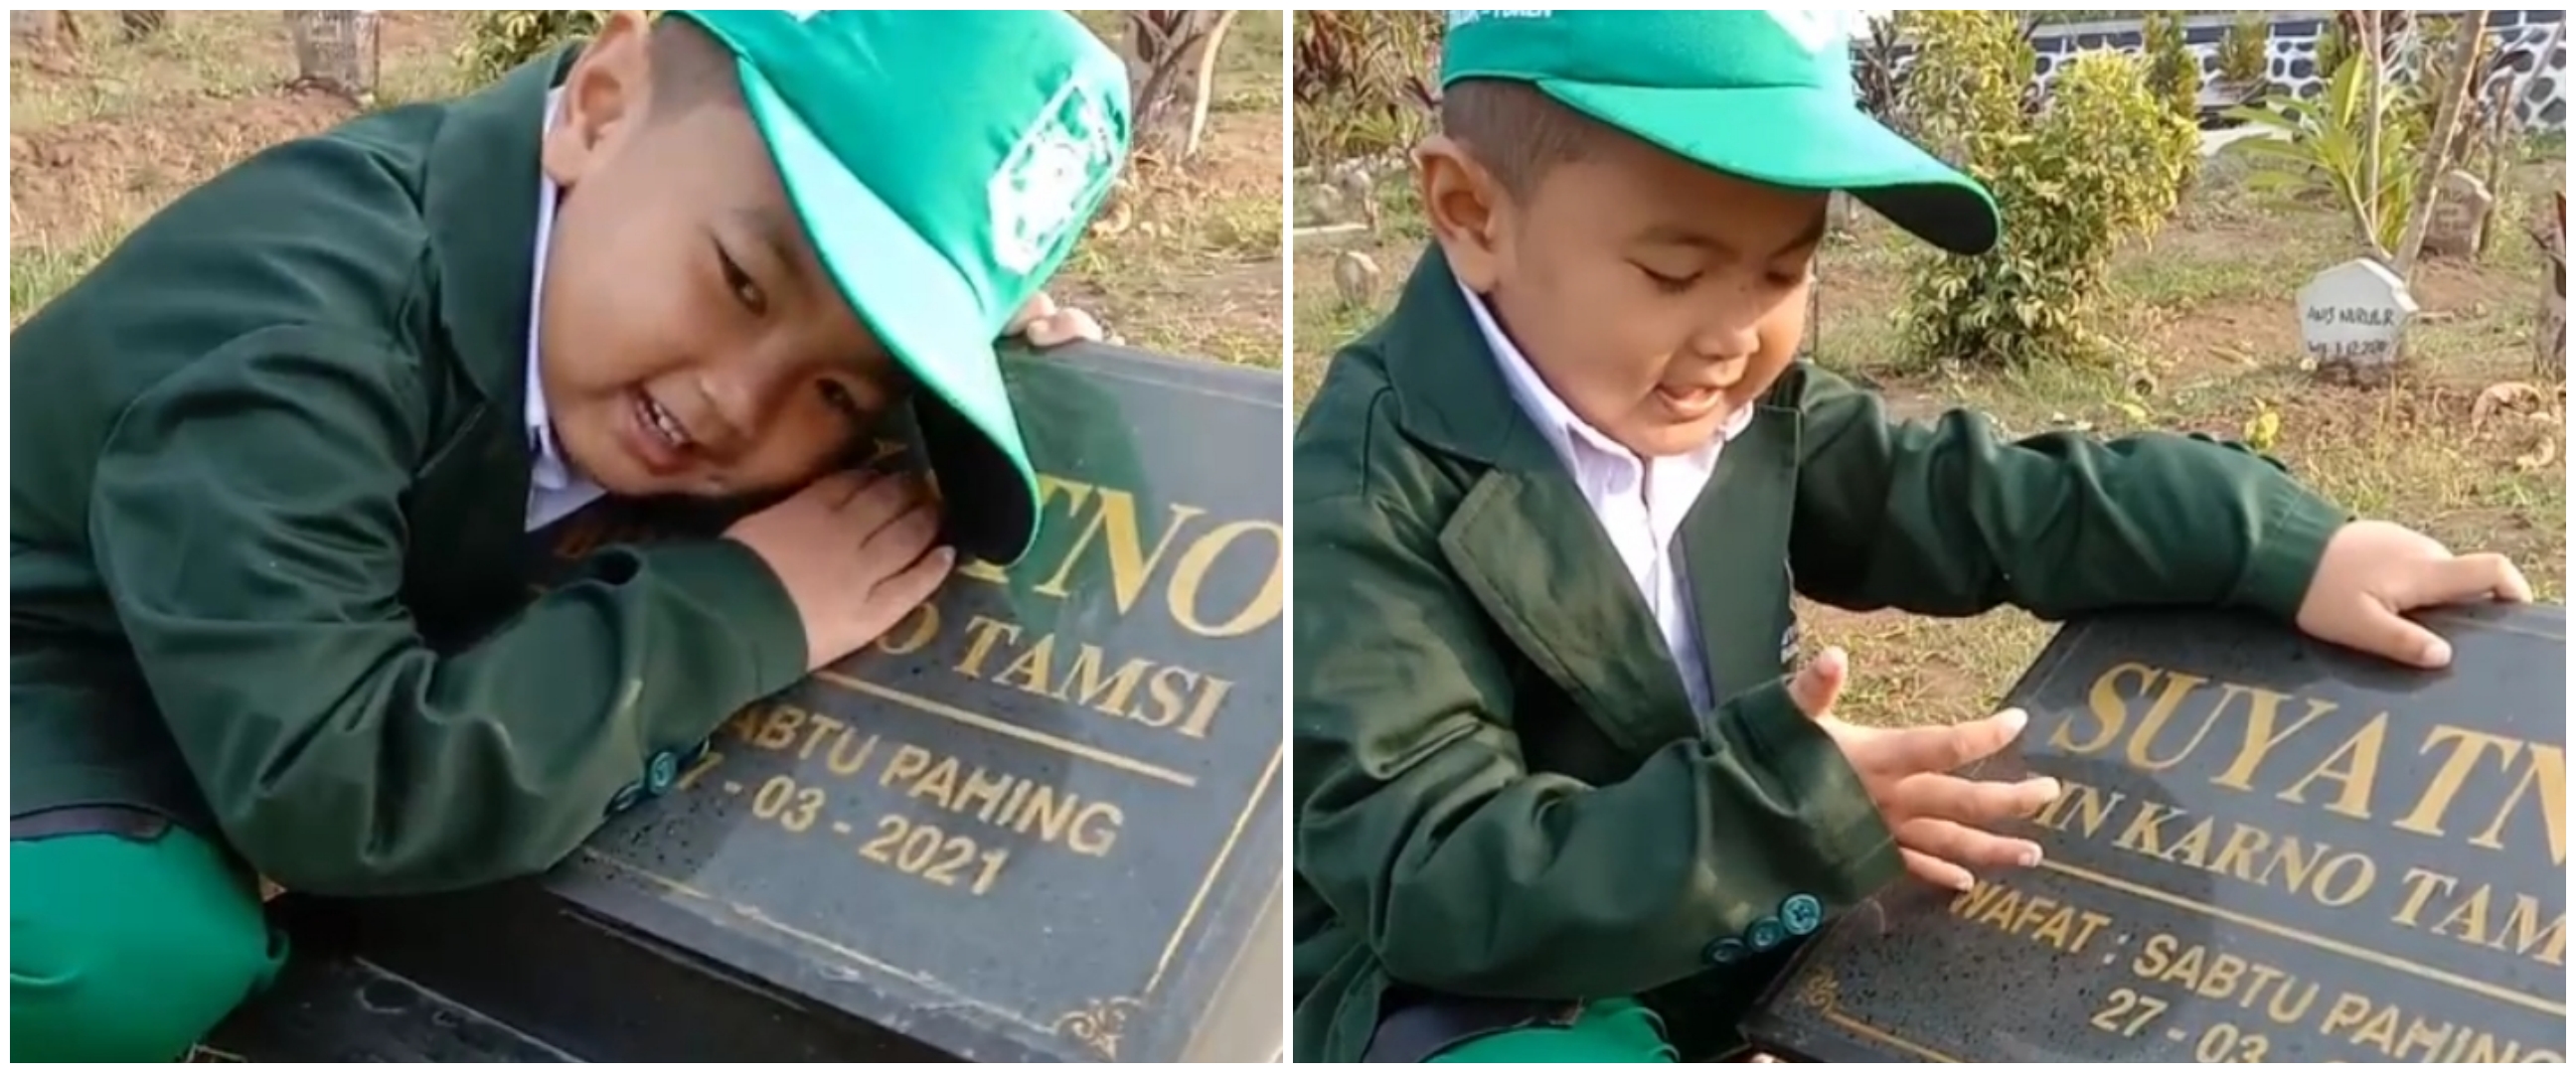 Bocah ke makam ayah untuk pamit sekolah, kisahnya menguras air mata